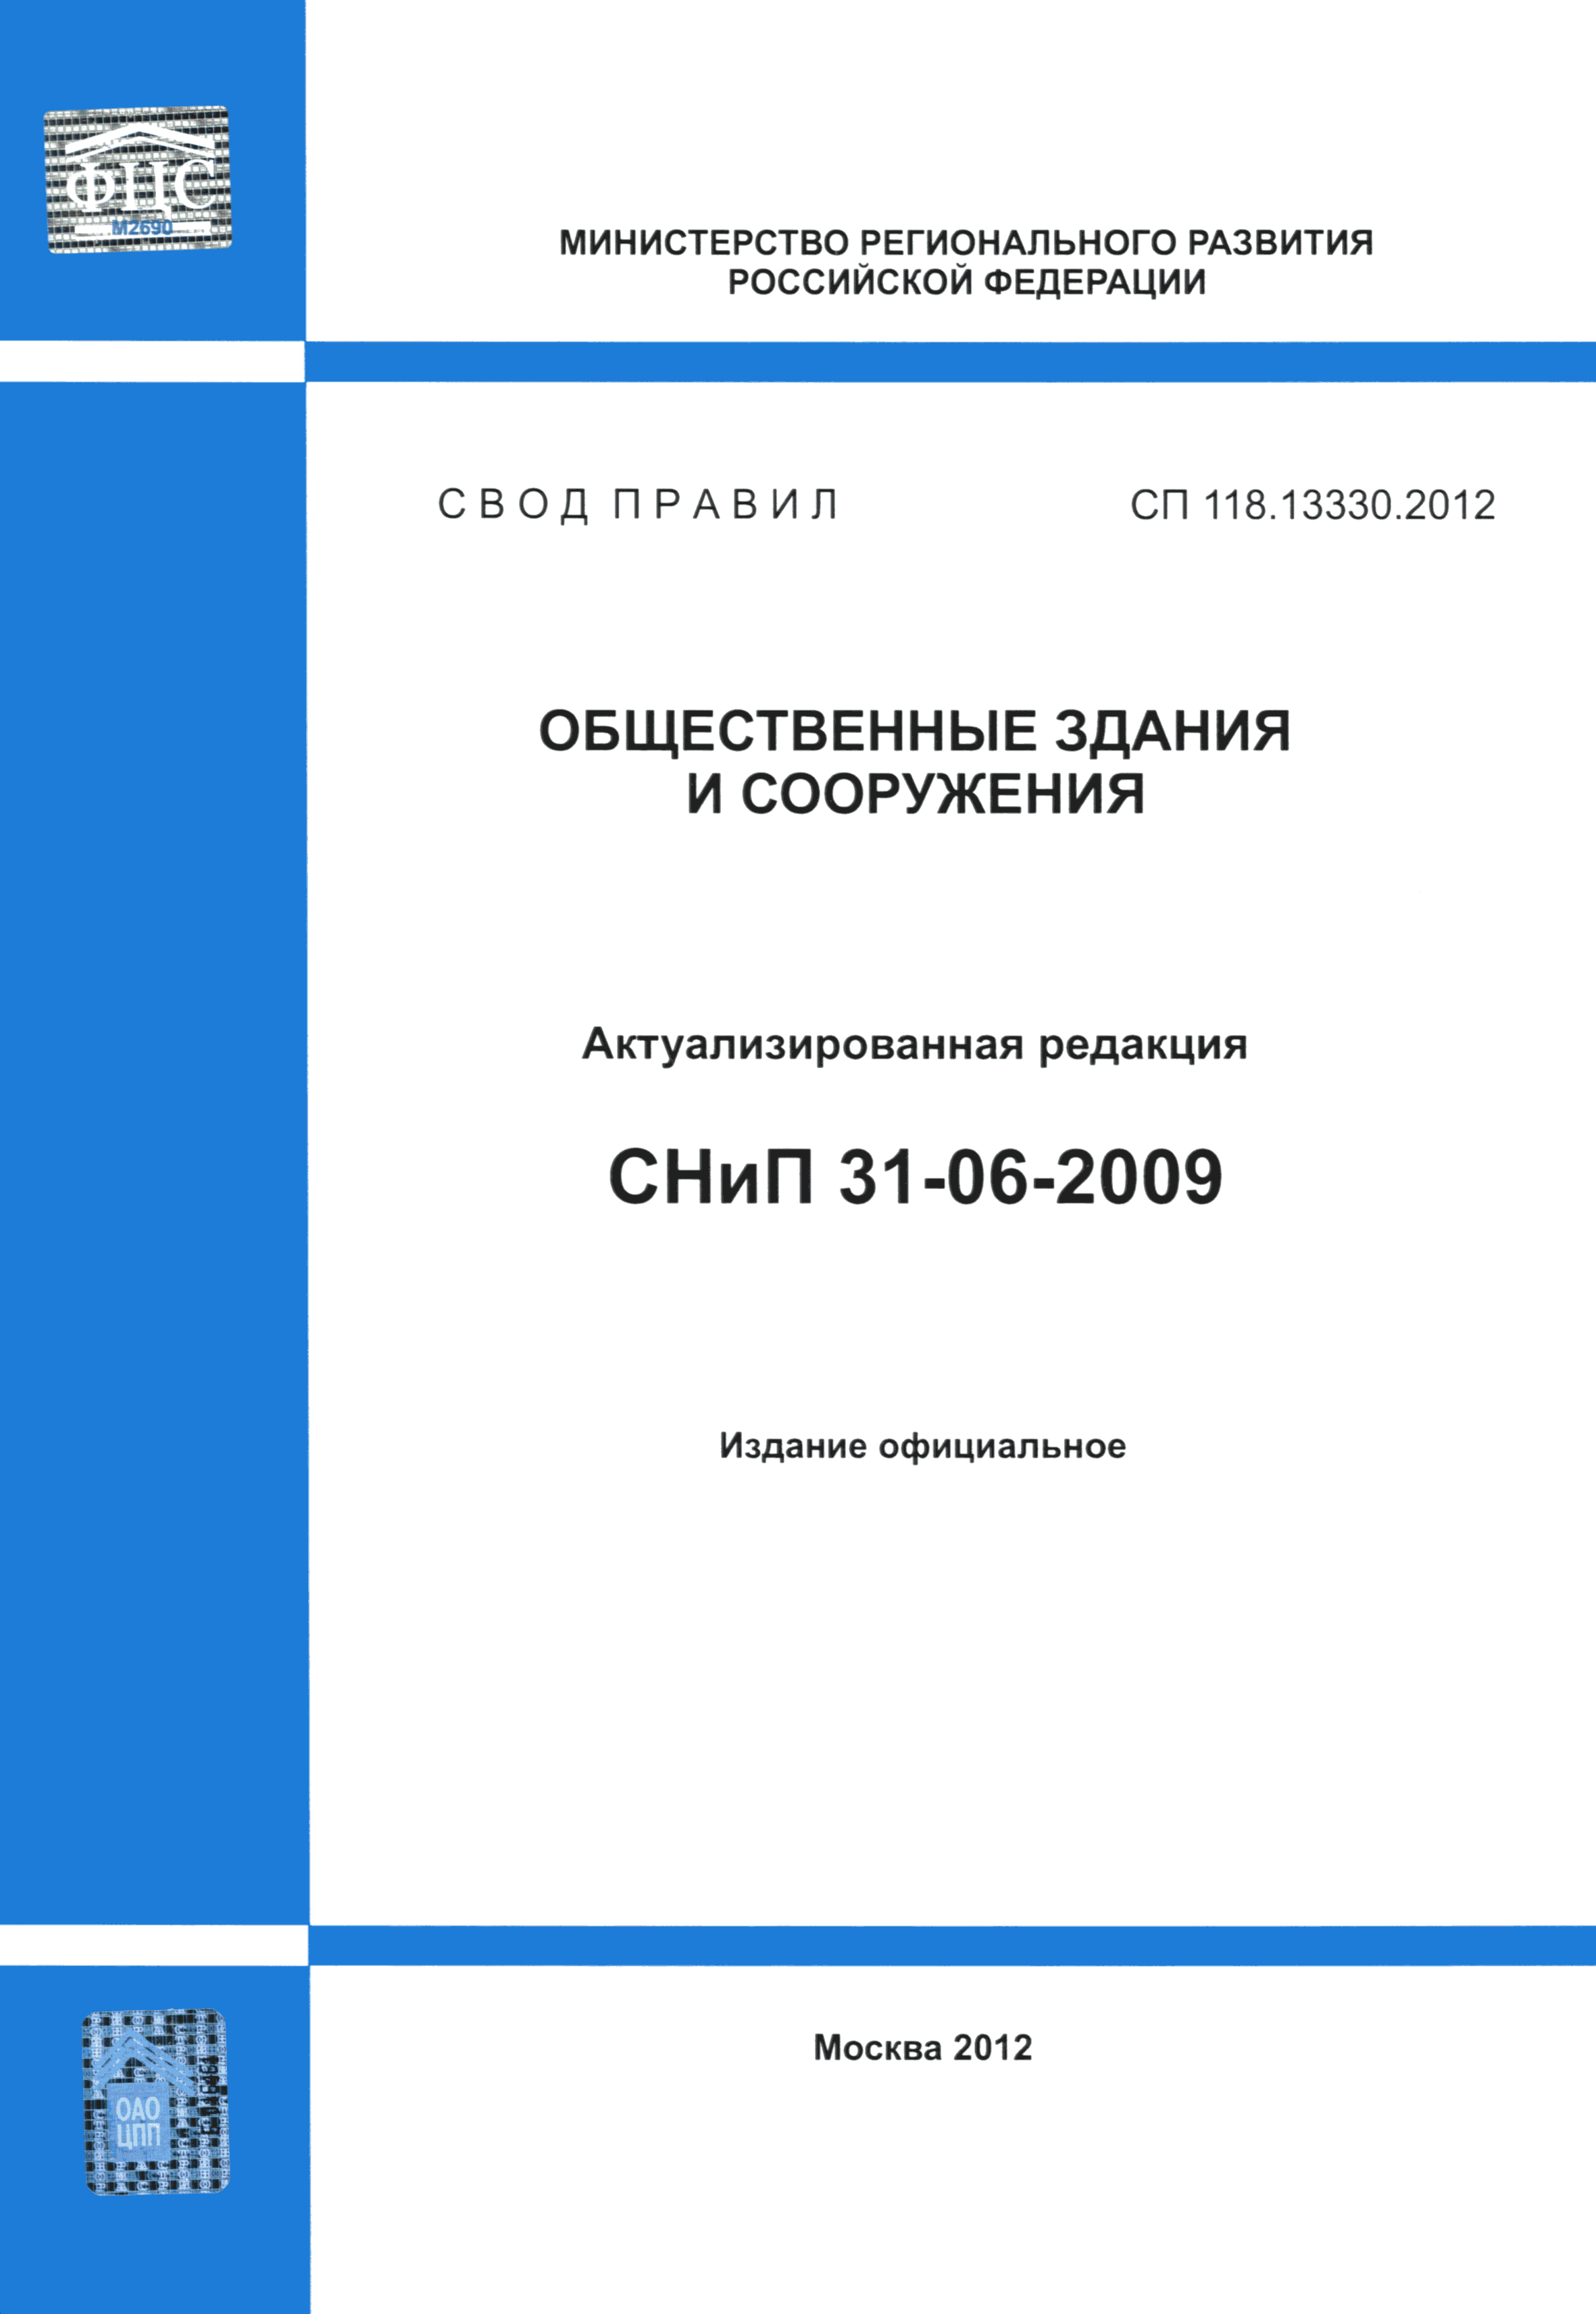 СП 118.13330.2012*